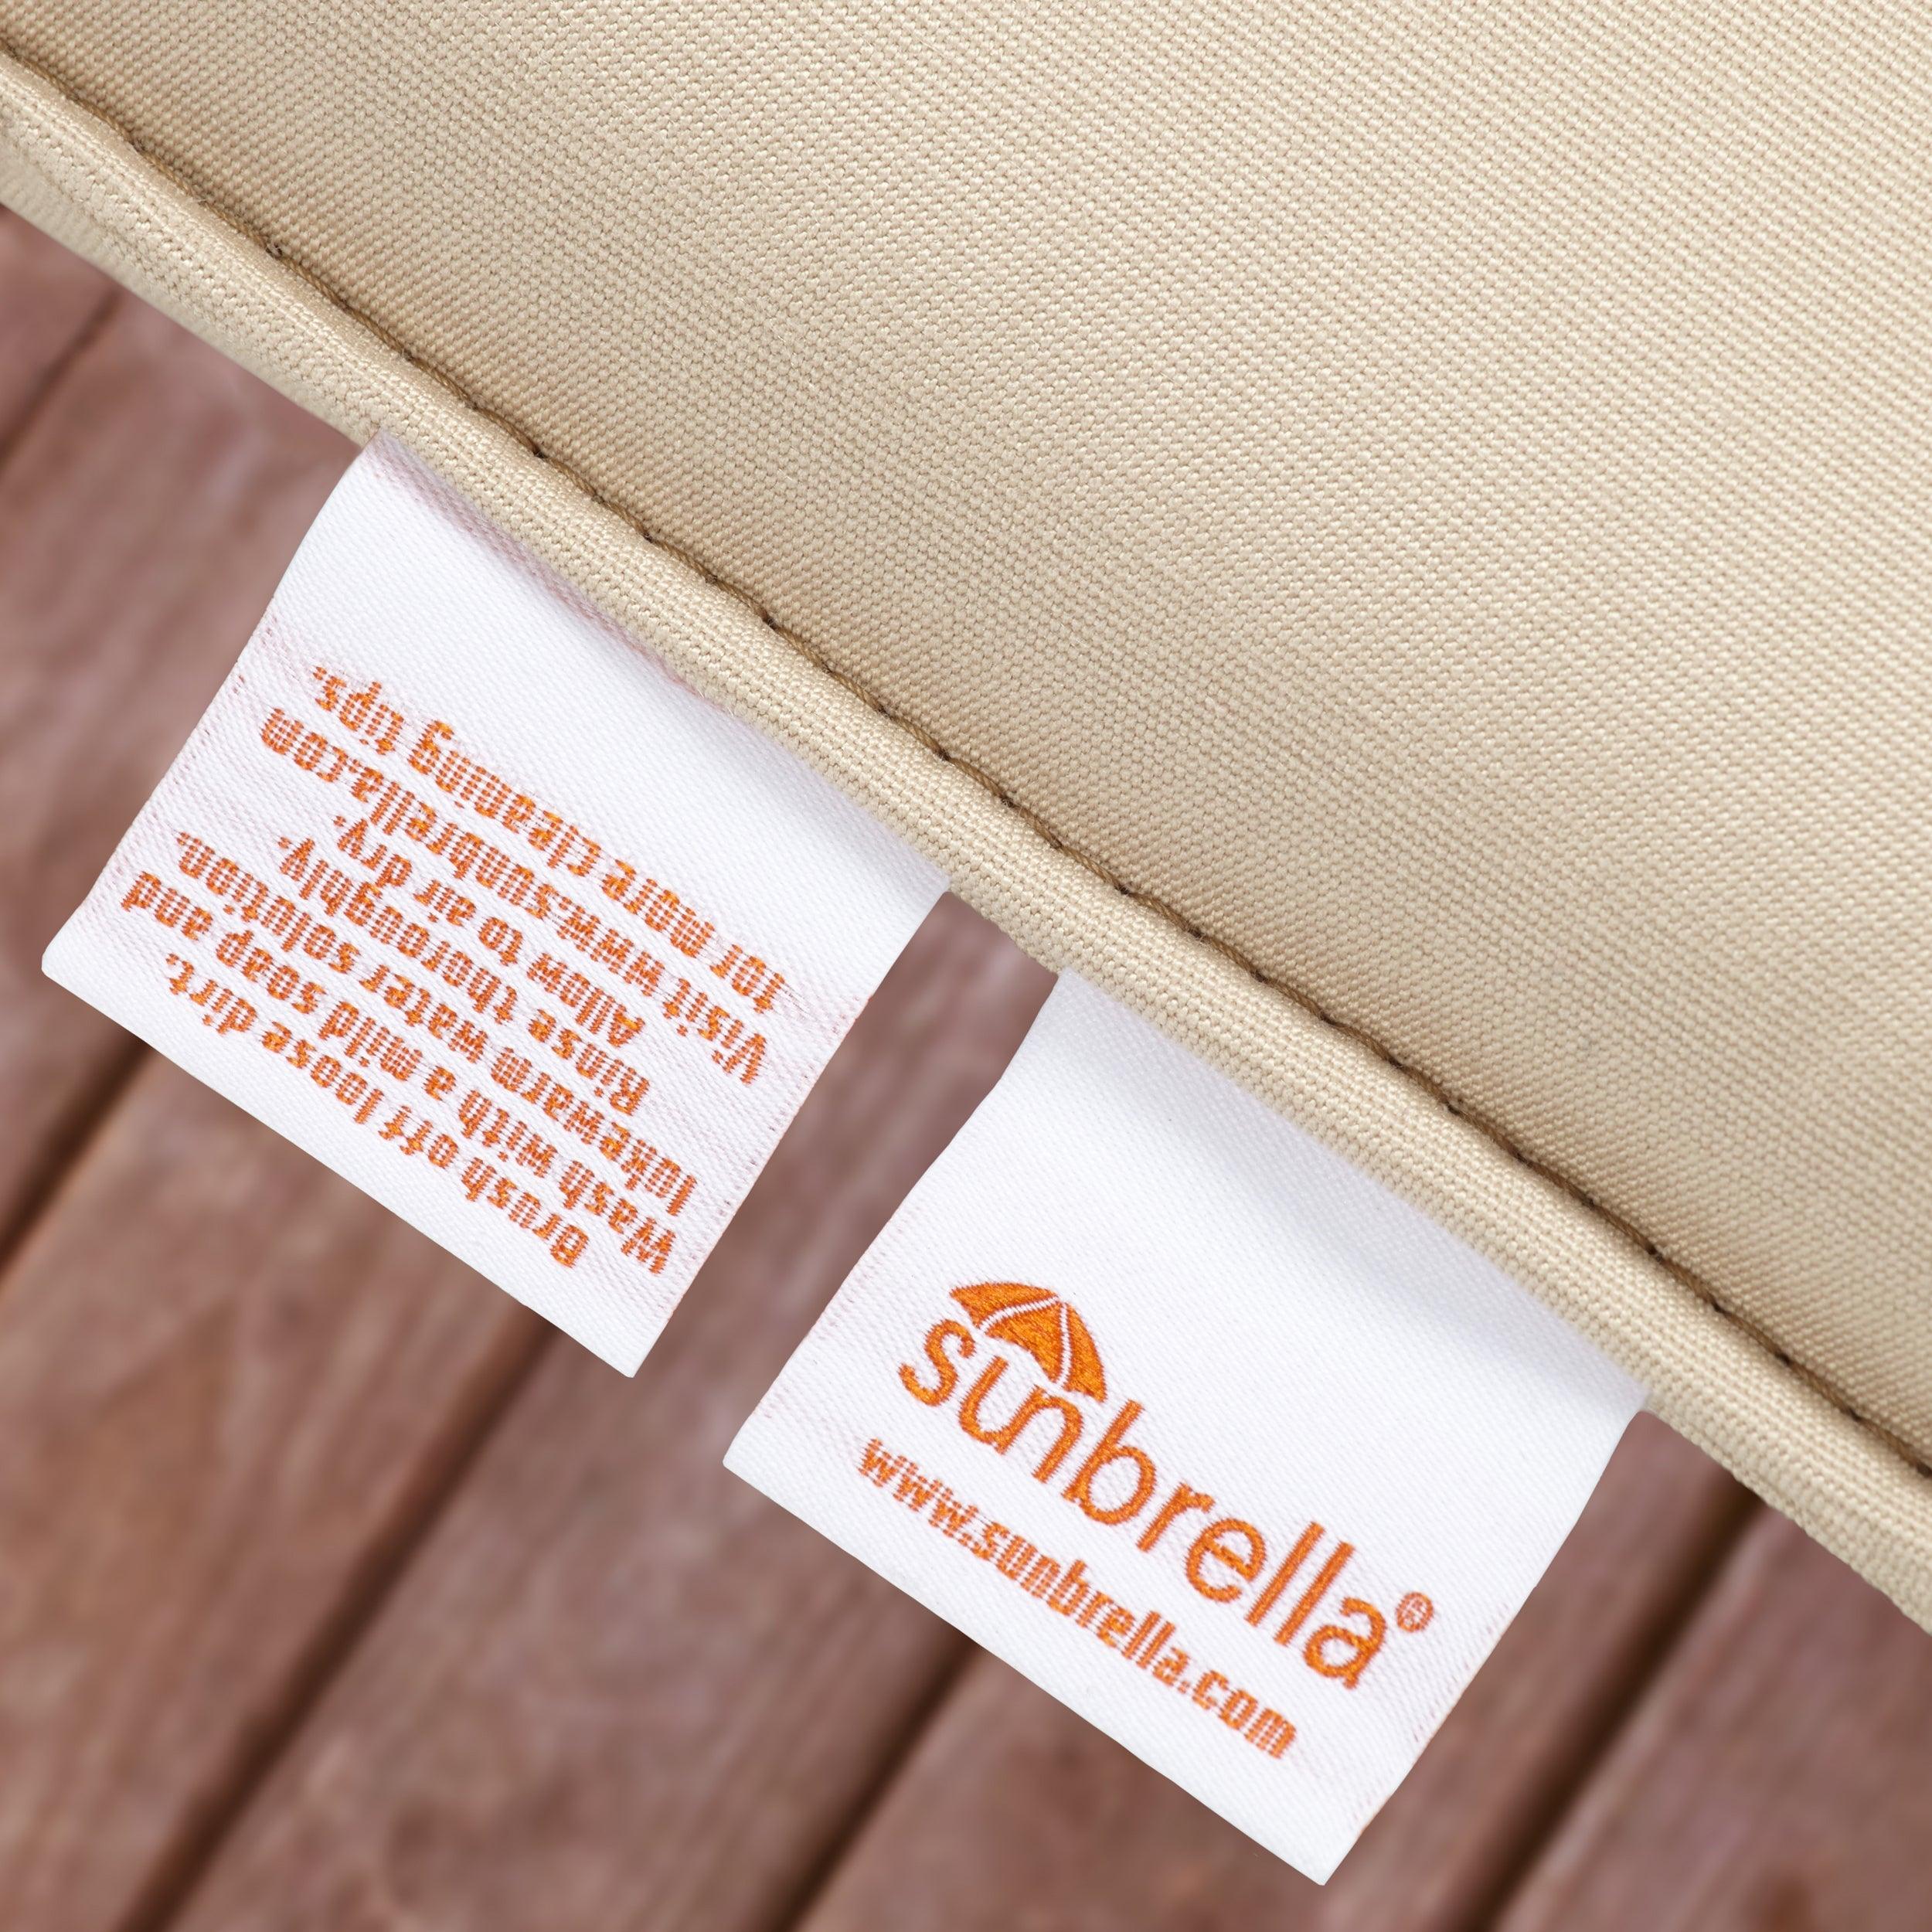 Sunbrella Tufted Indoor/Outdoor Bench Cushion - Sorra Home